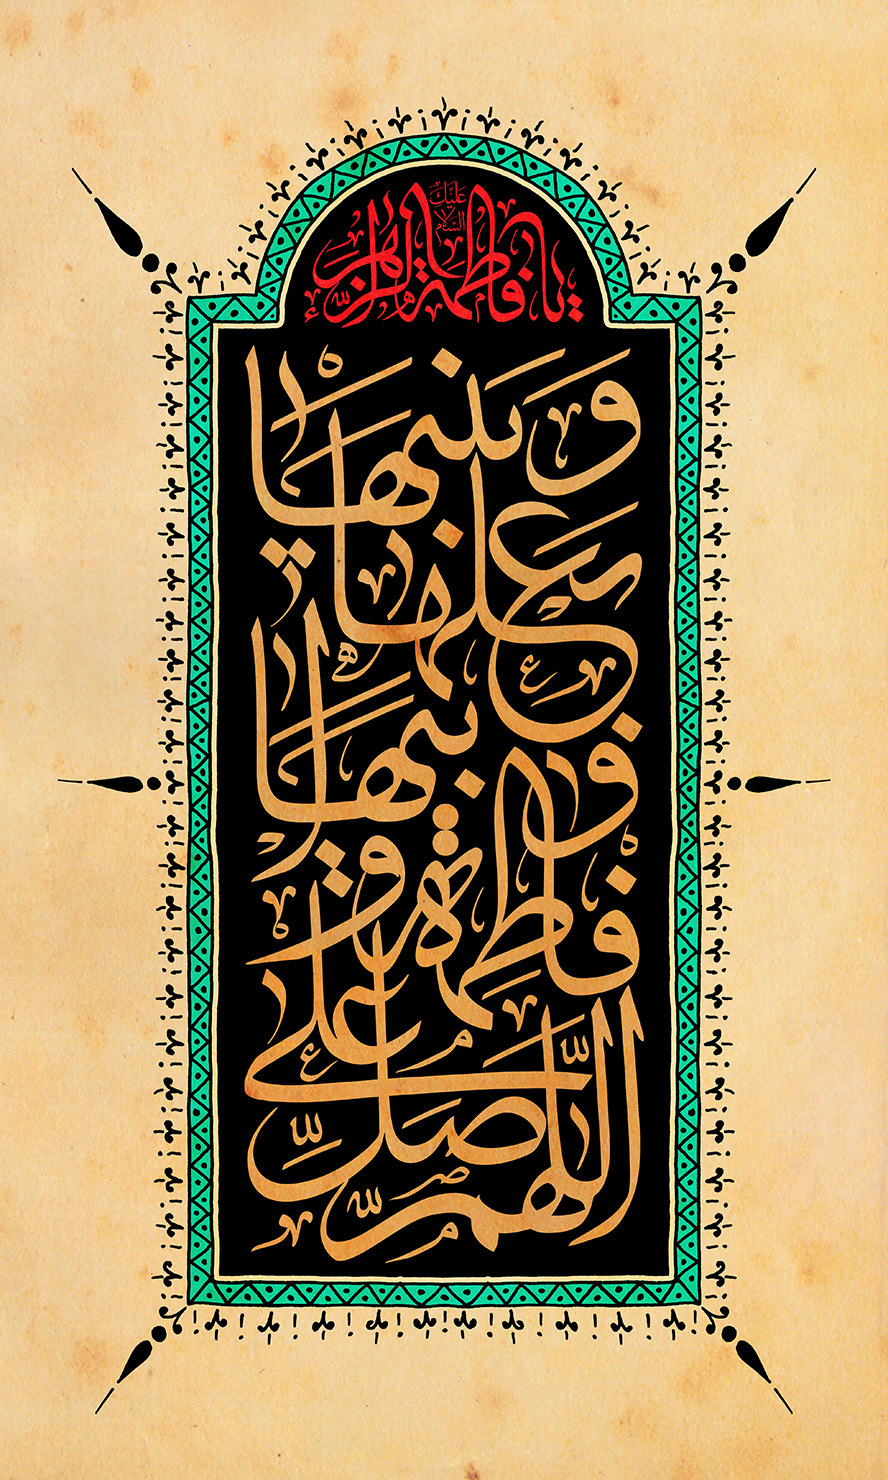 عکس با کیفیت قاب زیبا با کادر سبز و زمینه به رنگ مشکی همراه با متن اللهم صل علی فاطمه و اَبیها و بعلها در وسط قاب